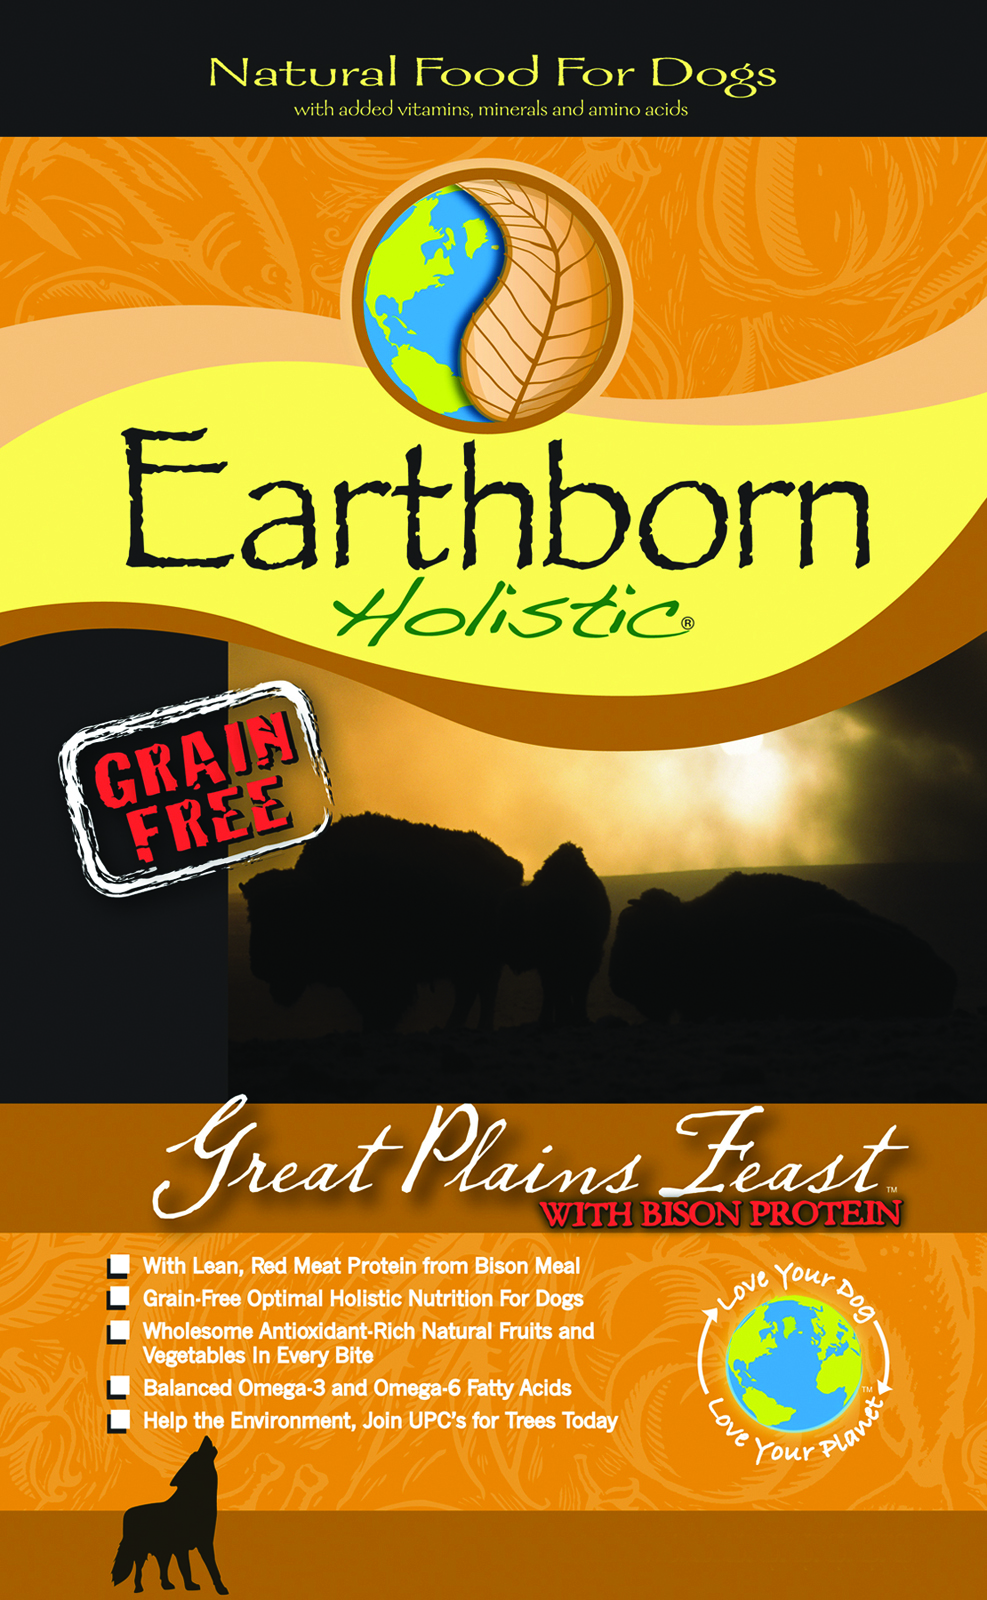 EARTHBORN GREAT PLAINS FEAST